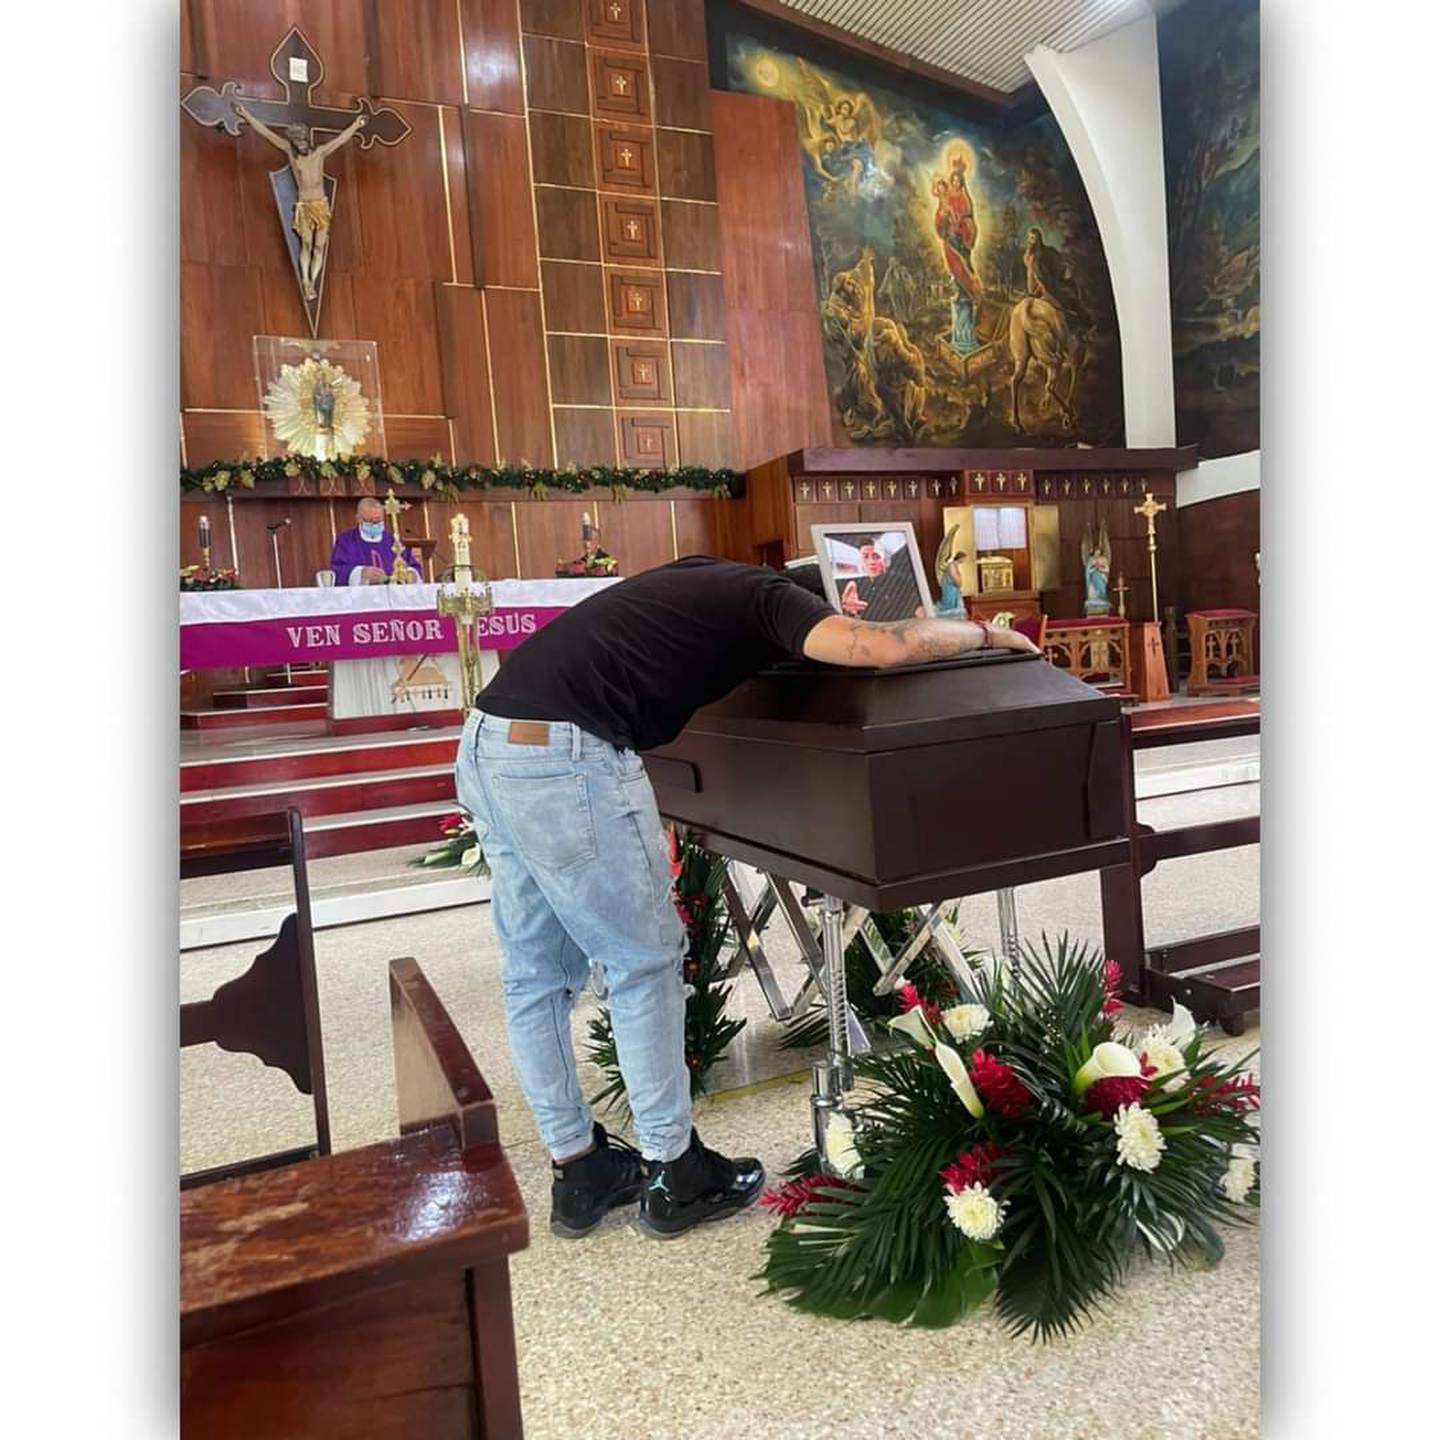 El gemelo del joven asesinado a balazos, quemado y maniatado, que apareció en Ochomogo, Cartago, lloró al despedirlo en la iglesia de La Unión. Foto: suminisrtada por Keyna Calderón.